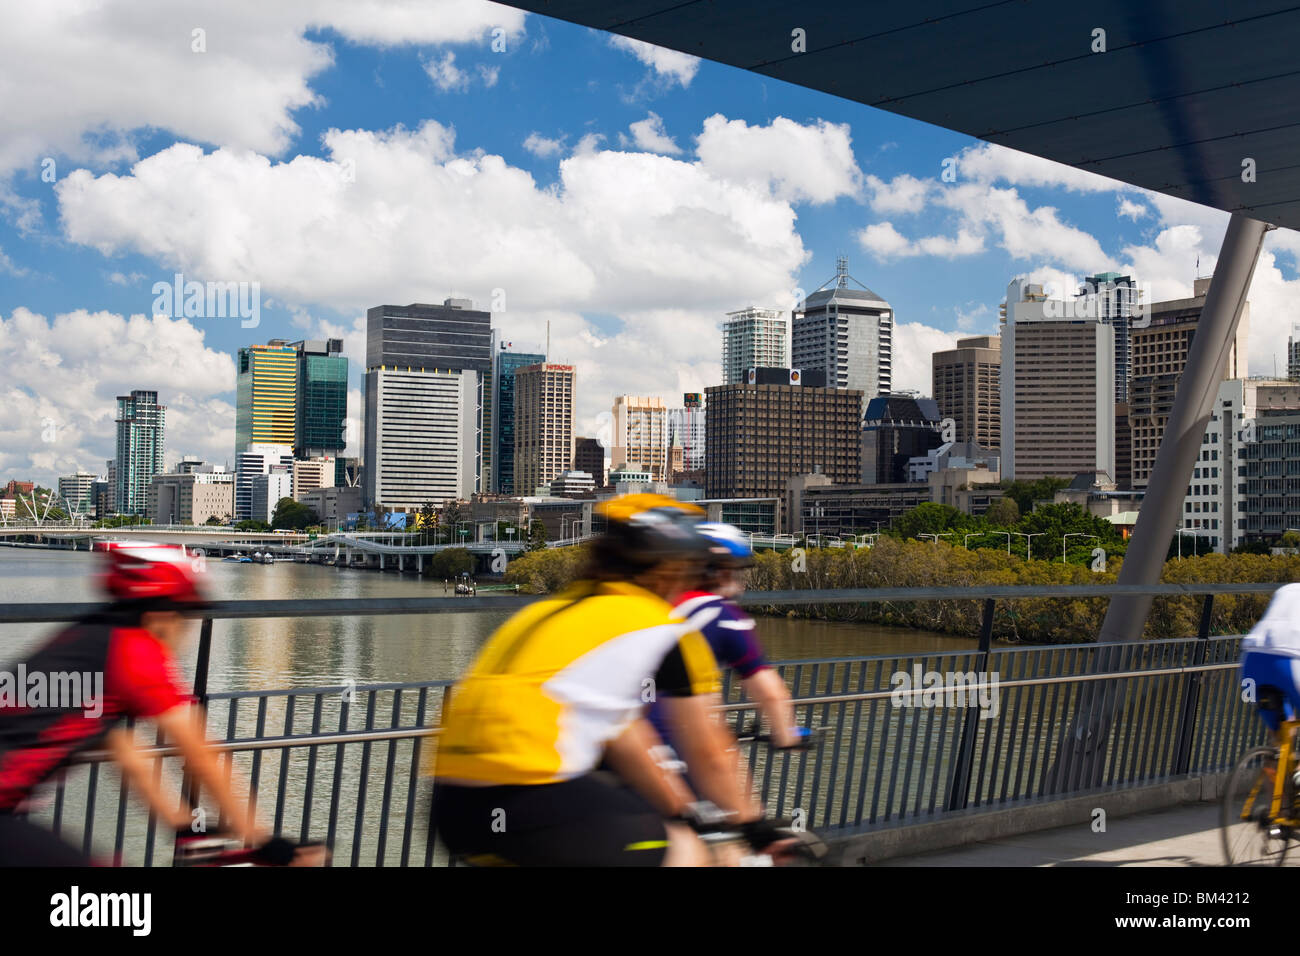 Les cyclistes sur le pont de bonne volonté avec la ville en arrière-plan. South Bank, Brisbane, Queensland, Australie Banque D'Images